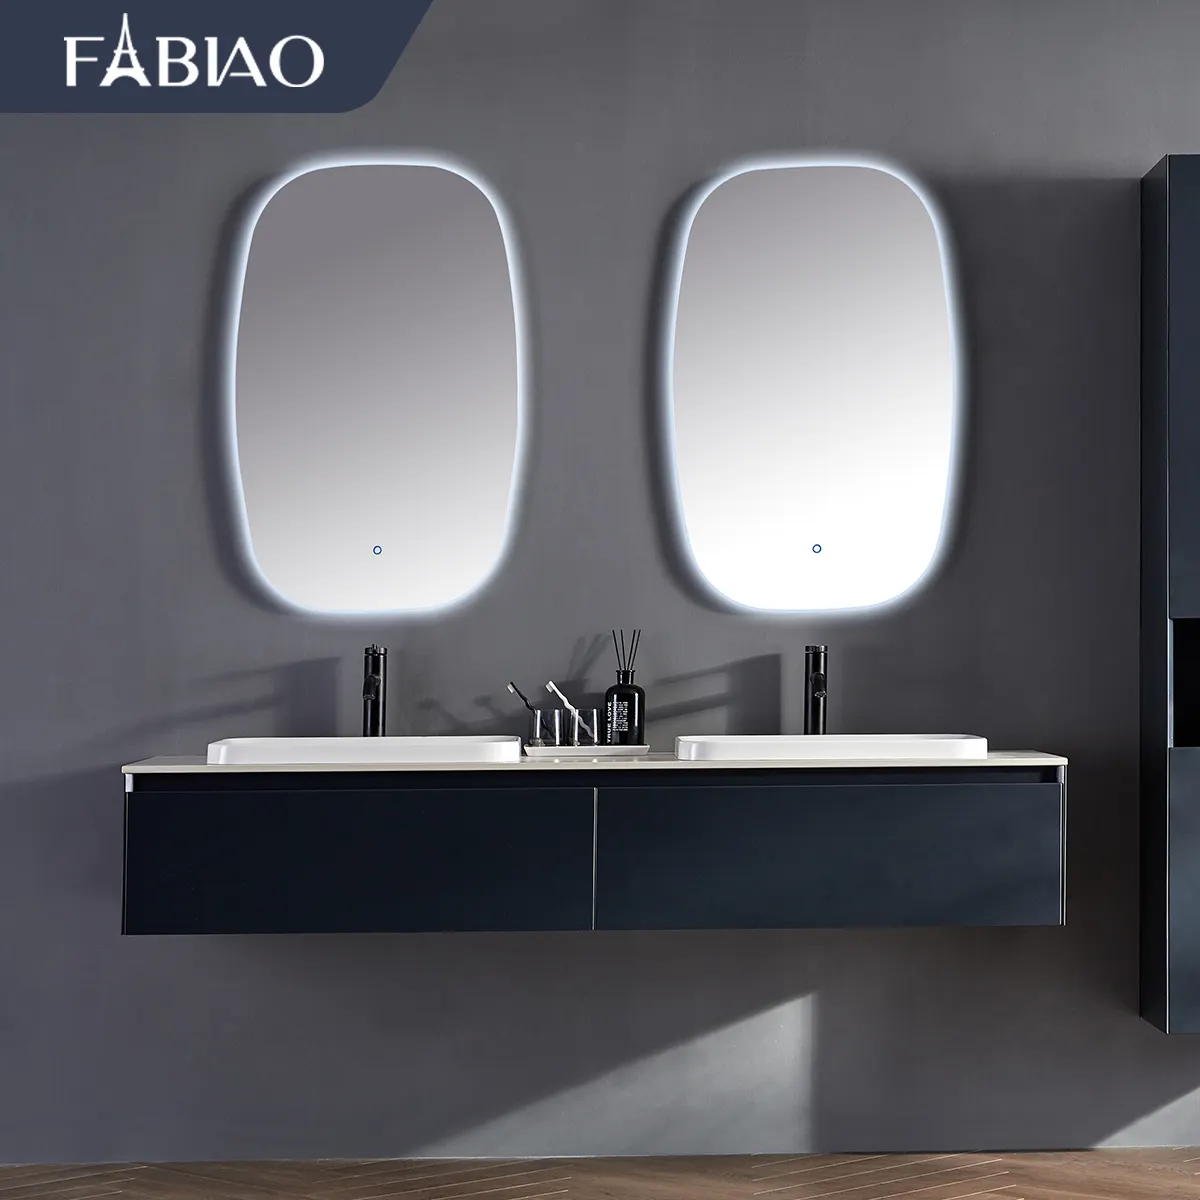 Мебель для ванной FABIAO, оптовая продажа, мебель для ванной комнаты, мебель для ванной из ПВХ, шкаф для ванной комнаты